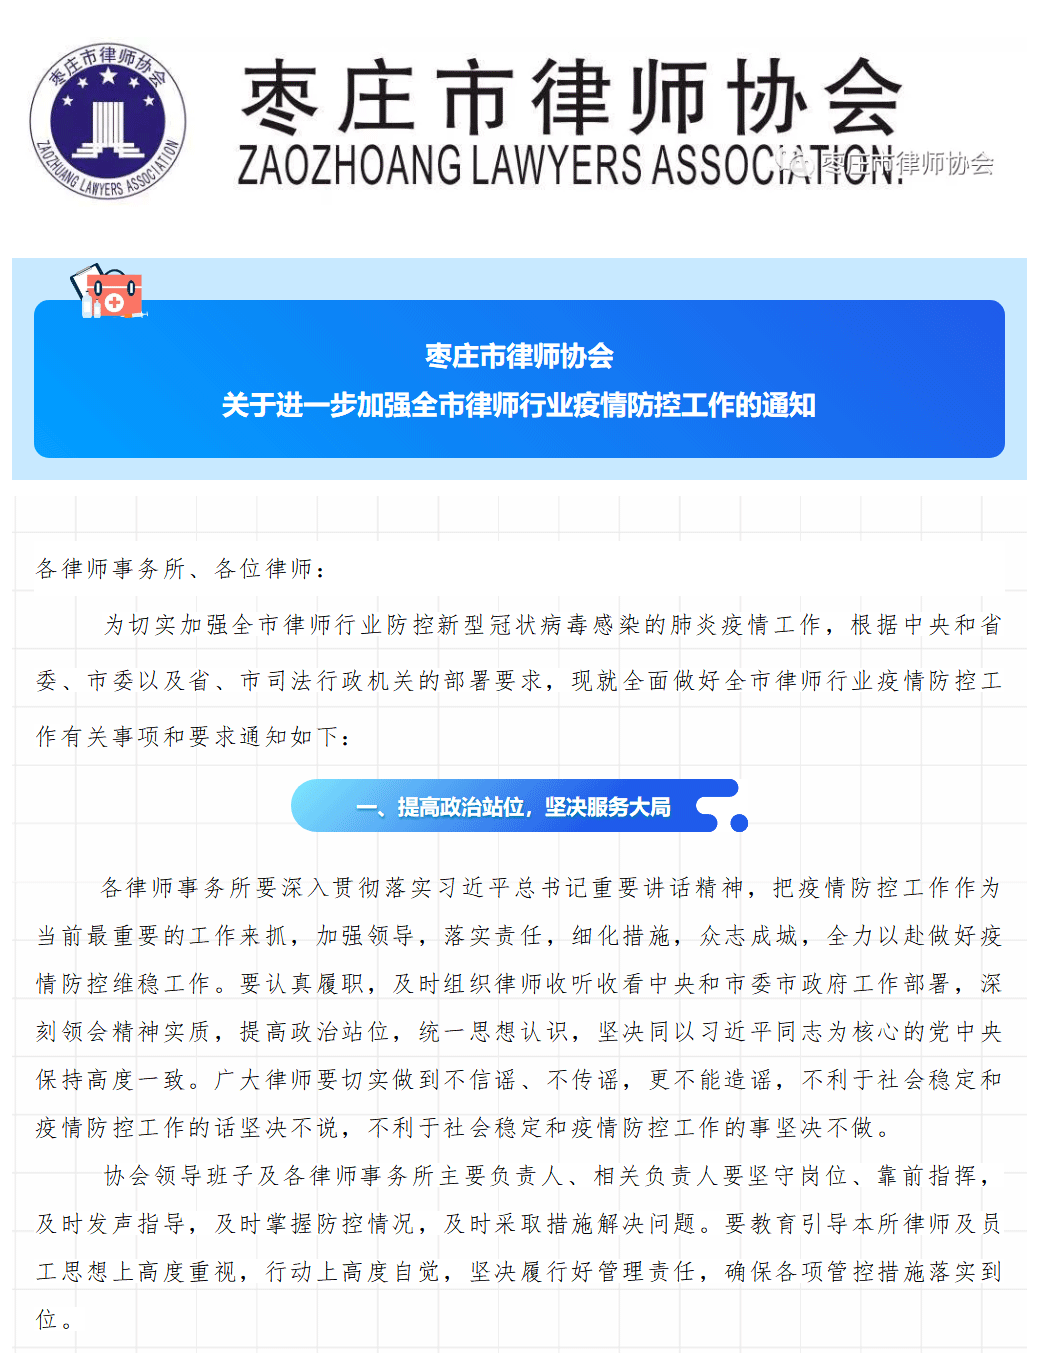 【重要通知】枣庄市律师协会关于进一步加强全市律师行业疫情防控工作的通知2019年12月28日_03.gif